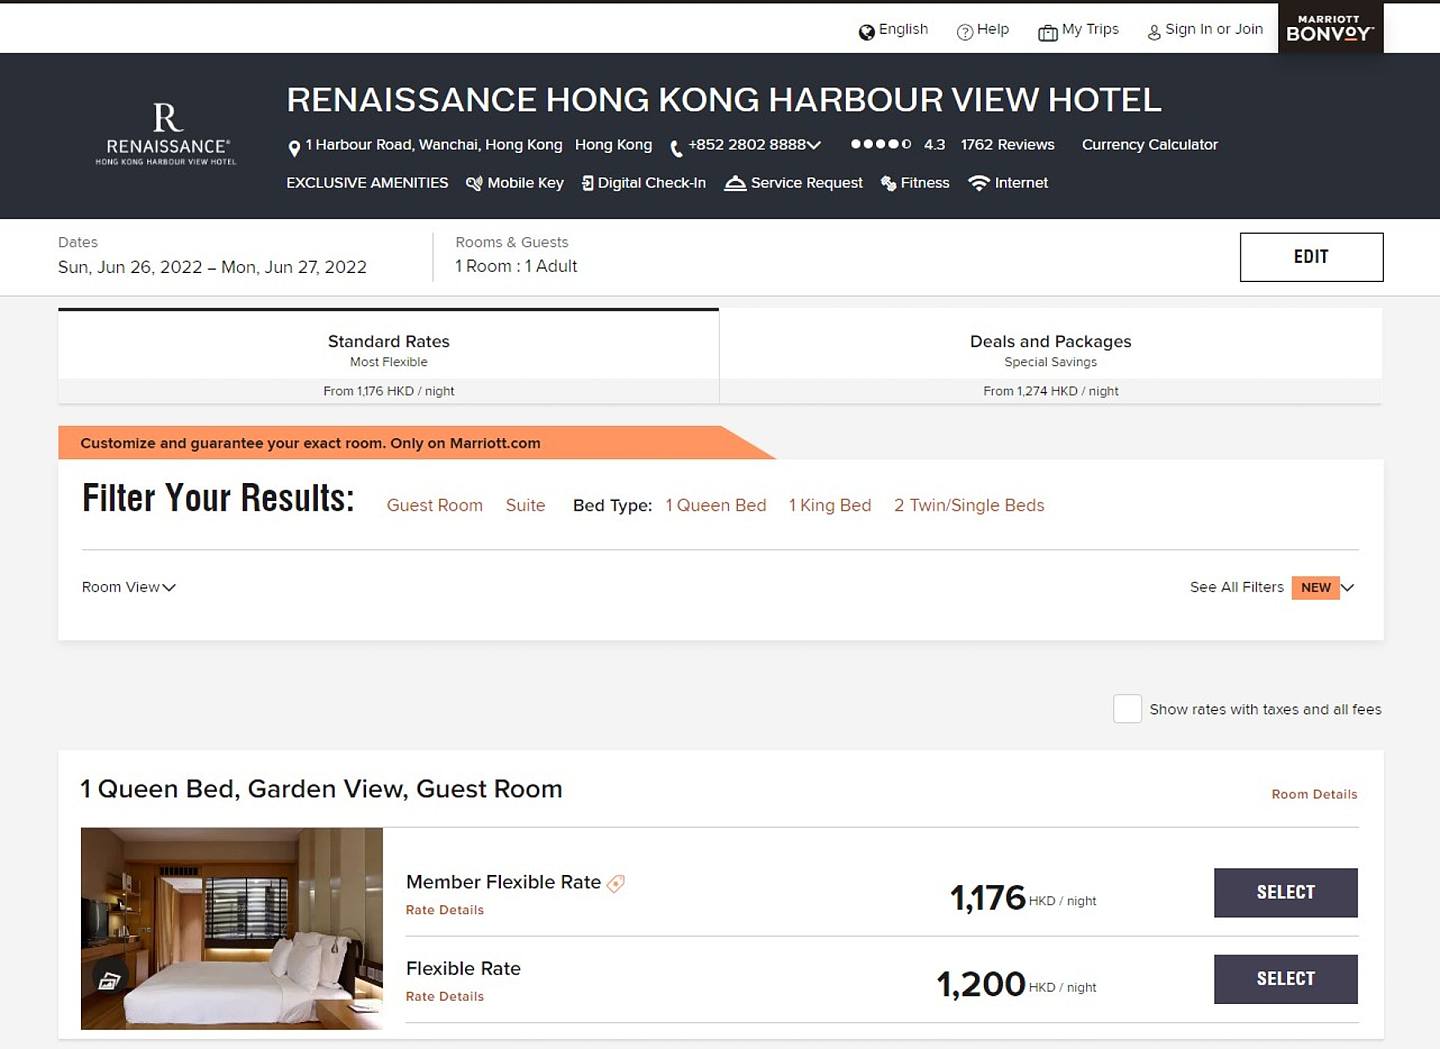 萬麗海景酒店官網顯示，6月26日至27日仍接受預訂。